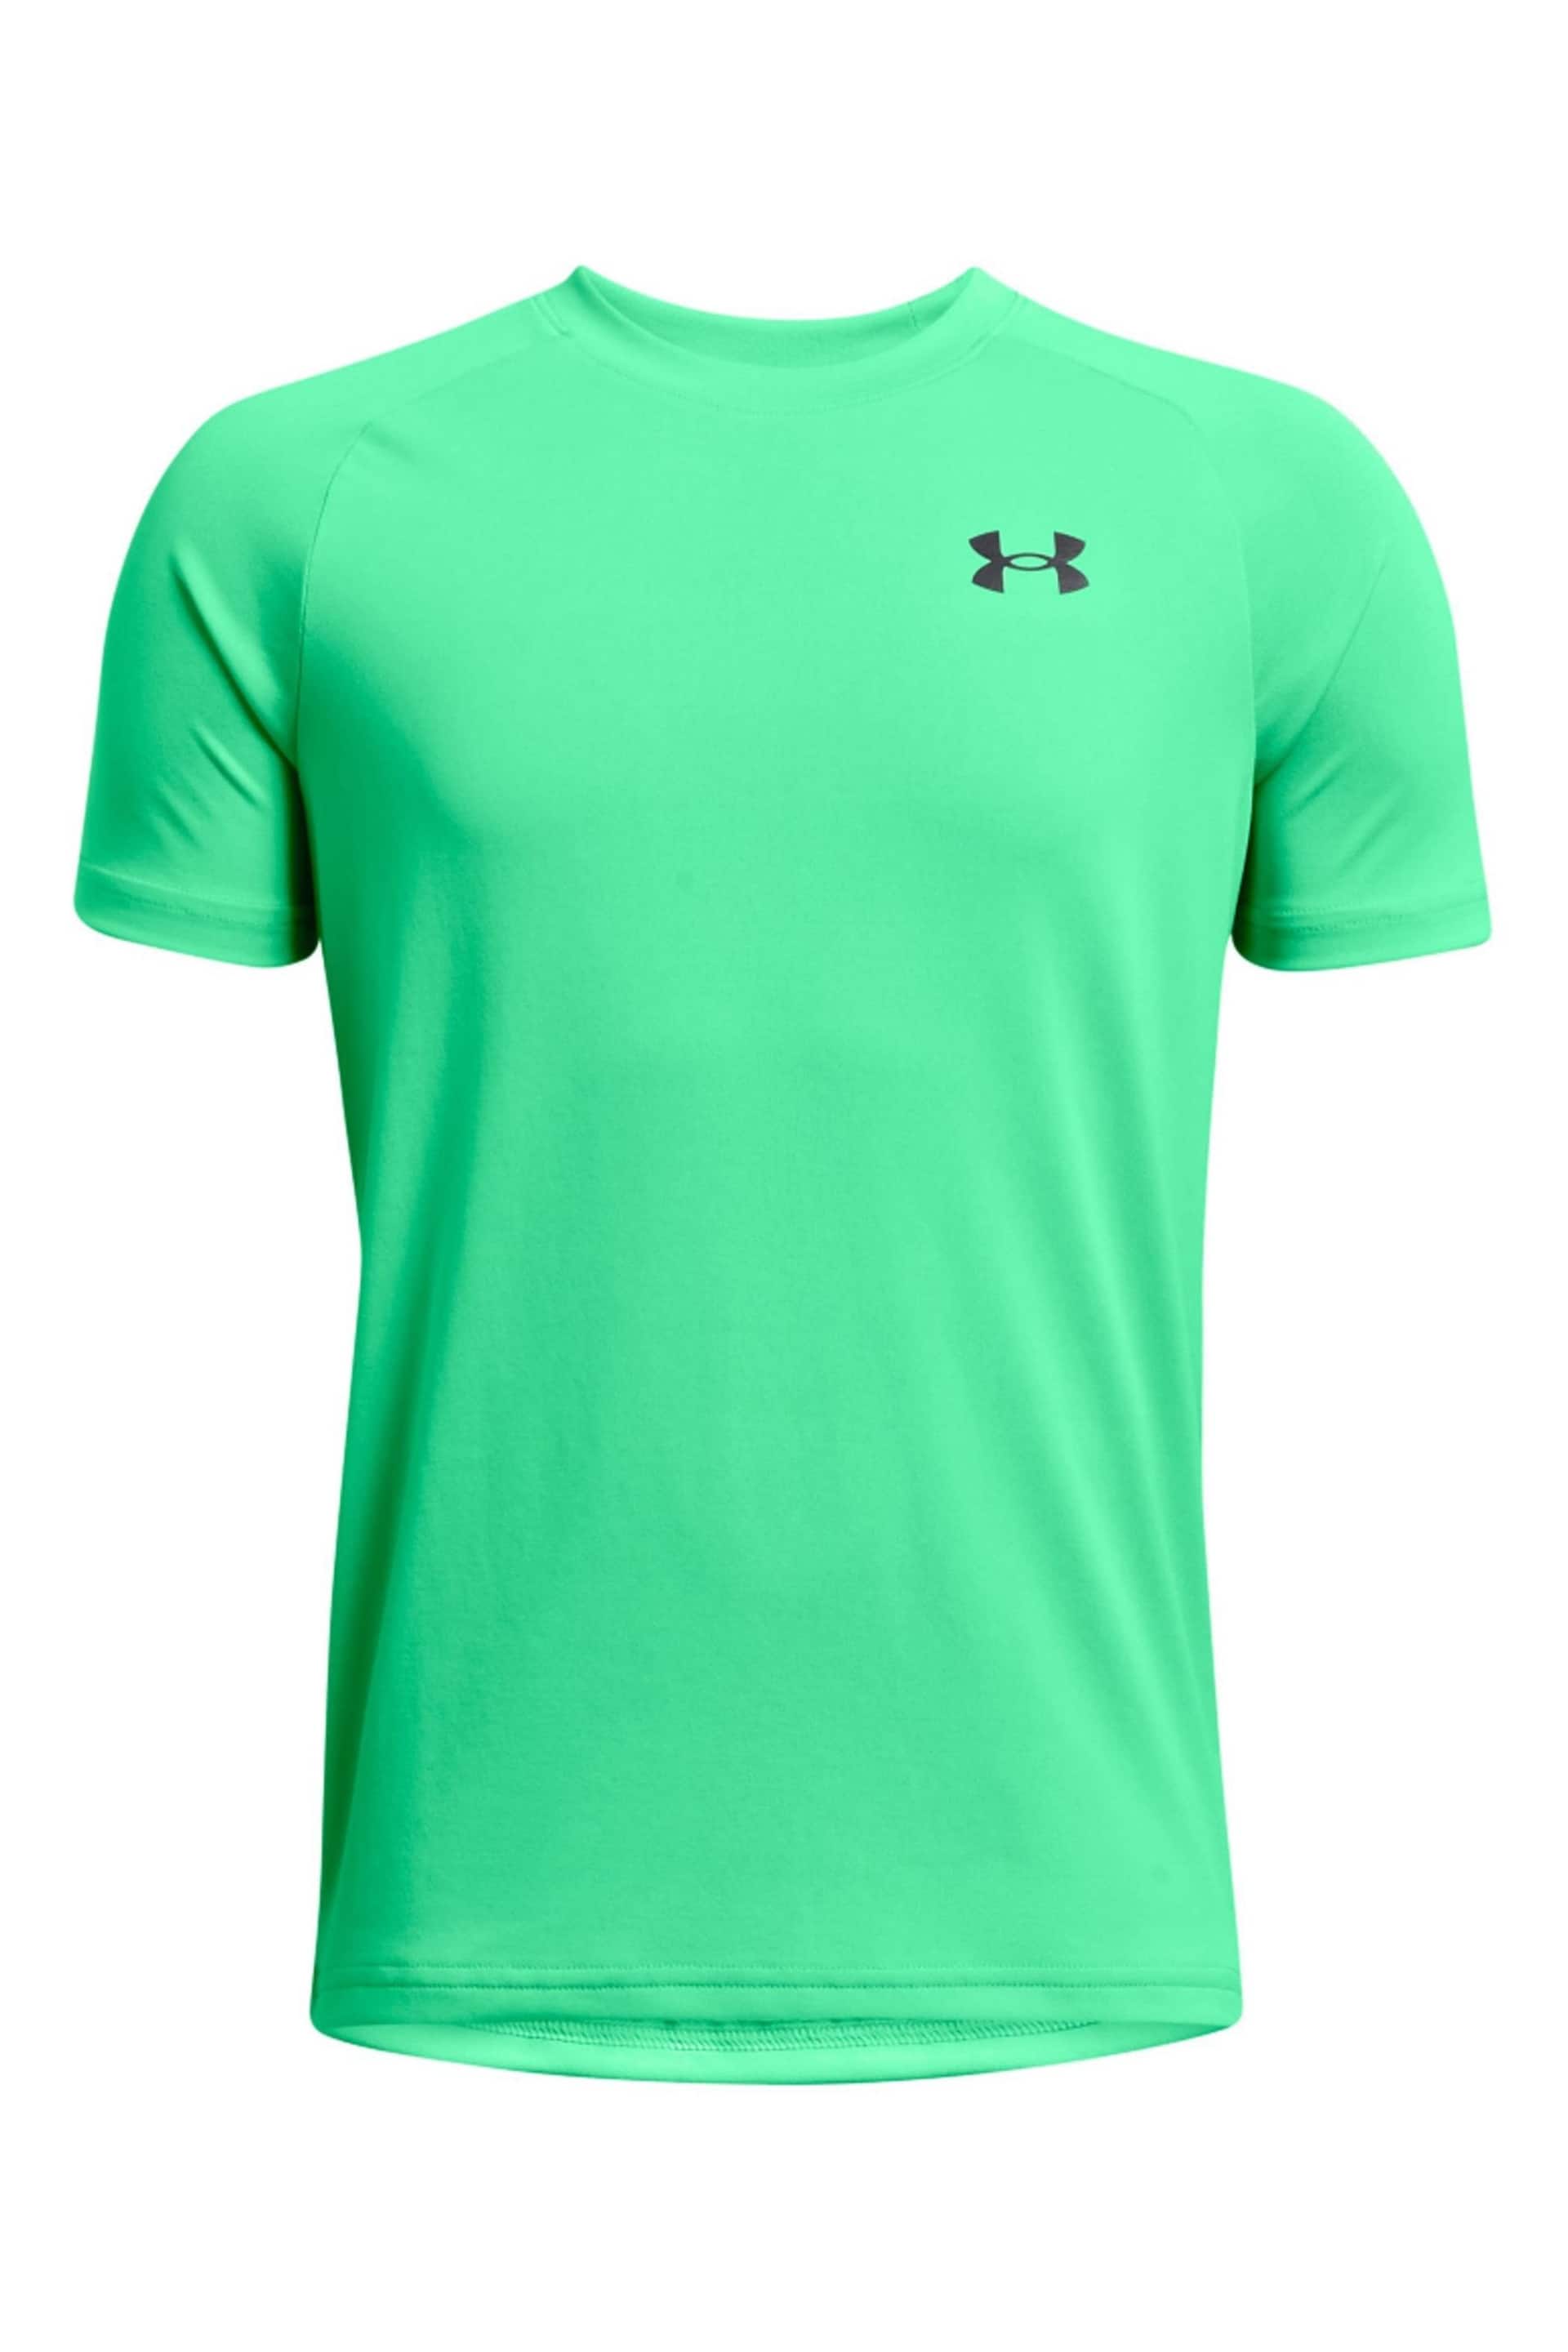 Under Armour Light Green Tech 20 Short Sleeve T-Shirt - Image 1 of 2